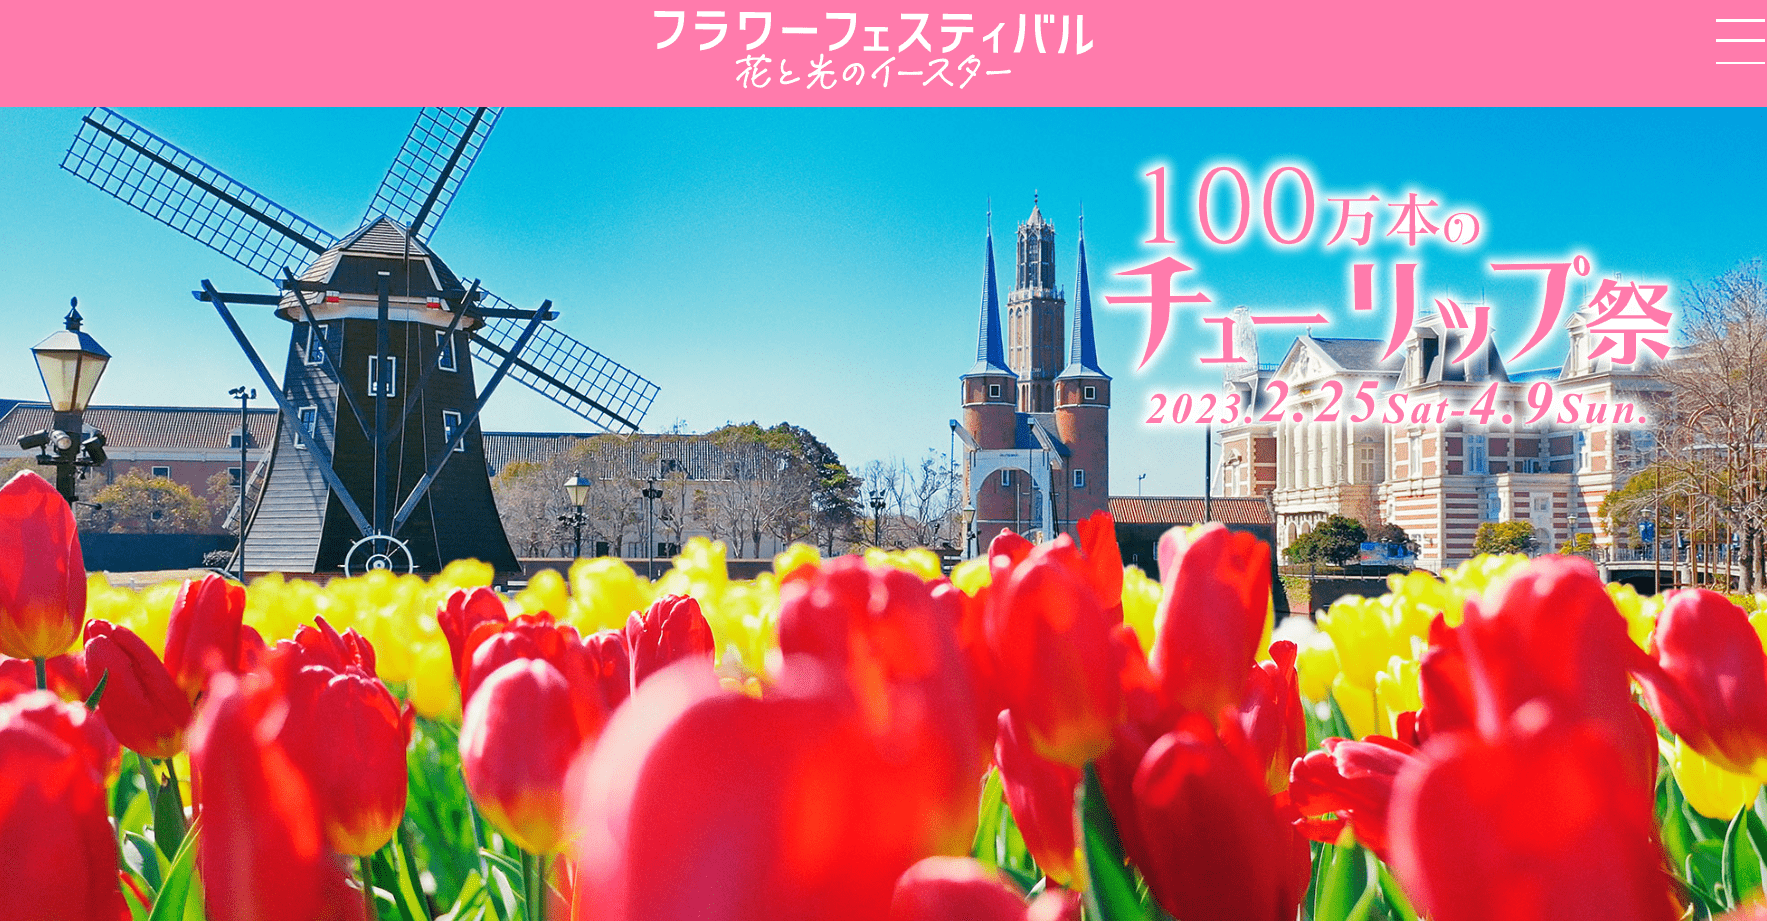 1 Million Tulips Blooming